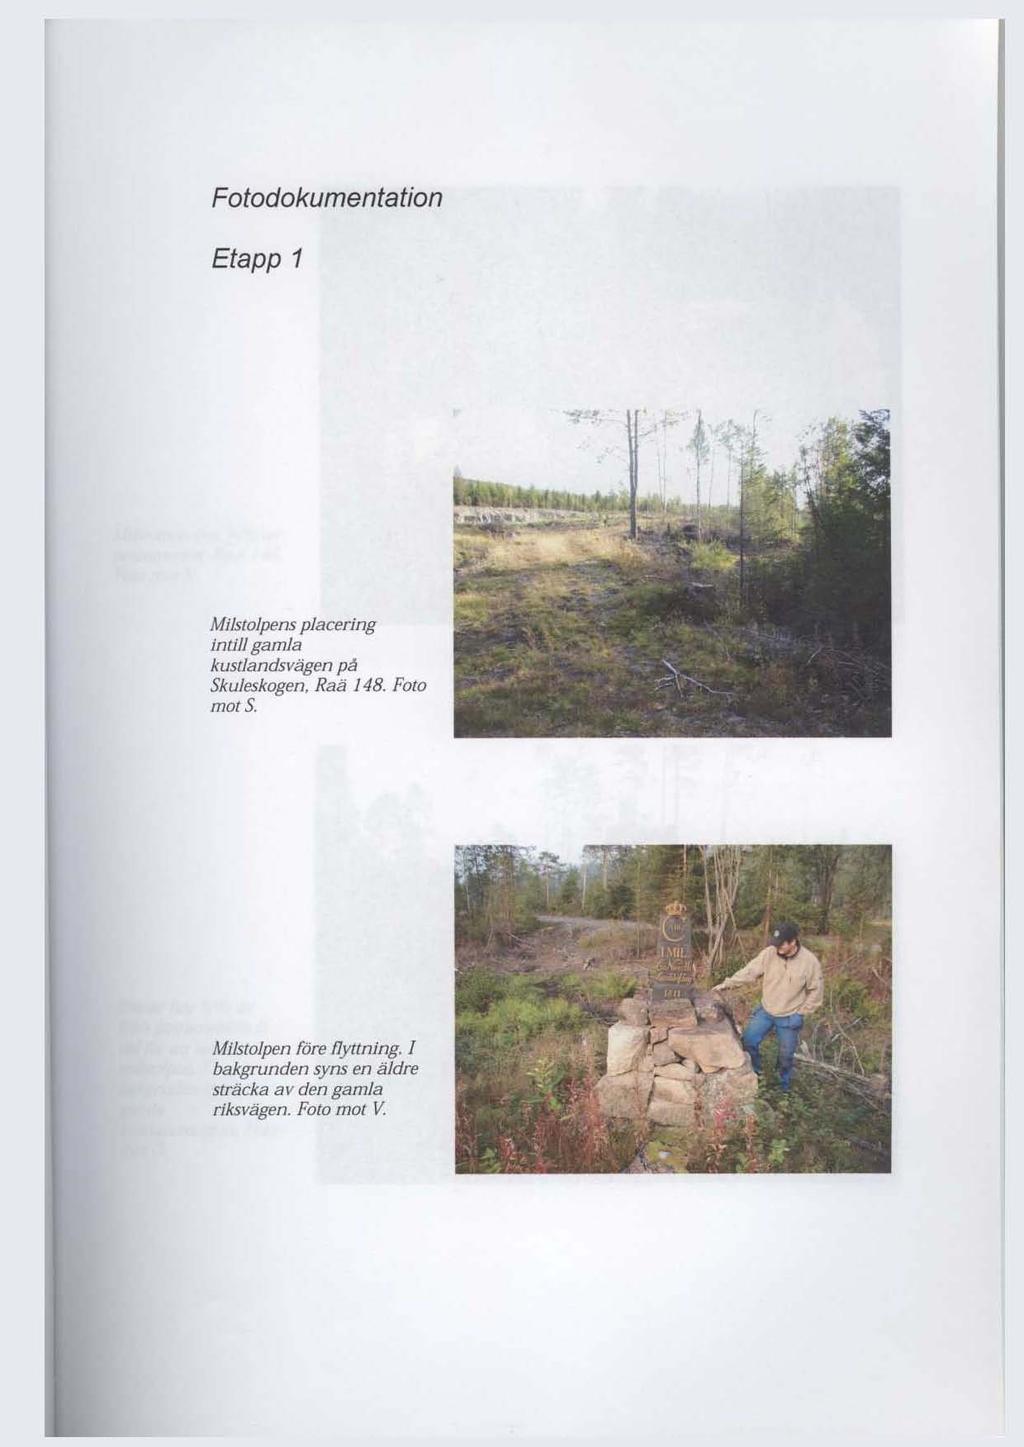 Fotodokumentation Etapp 1 Milstolpens placering intillgamla kuscjandsvägen på SkuJeskogen, Raä J48.